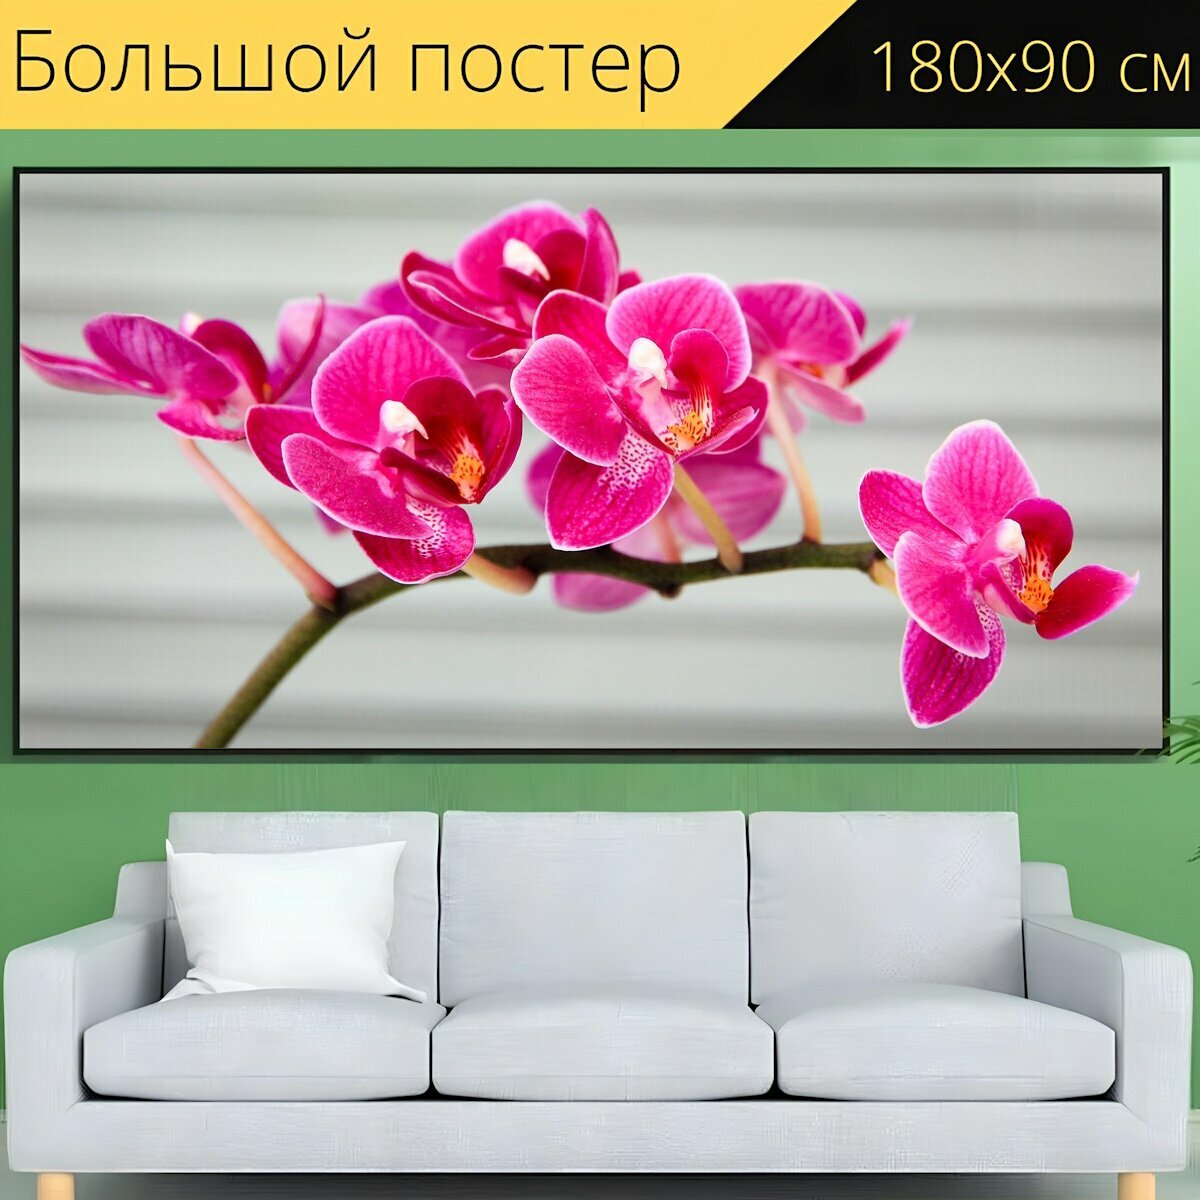 Большой постер "Орхидея, розовый, флора" 180 x 90 см. для интерьера